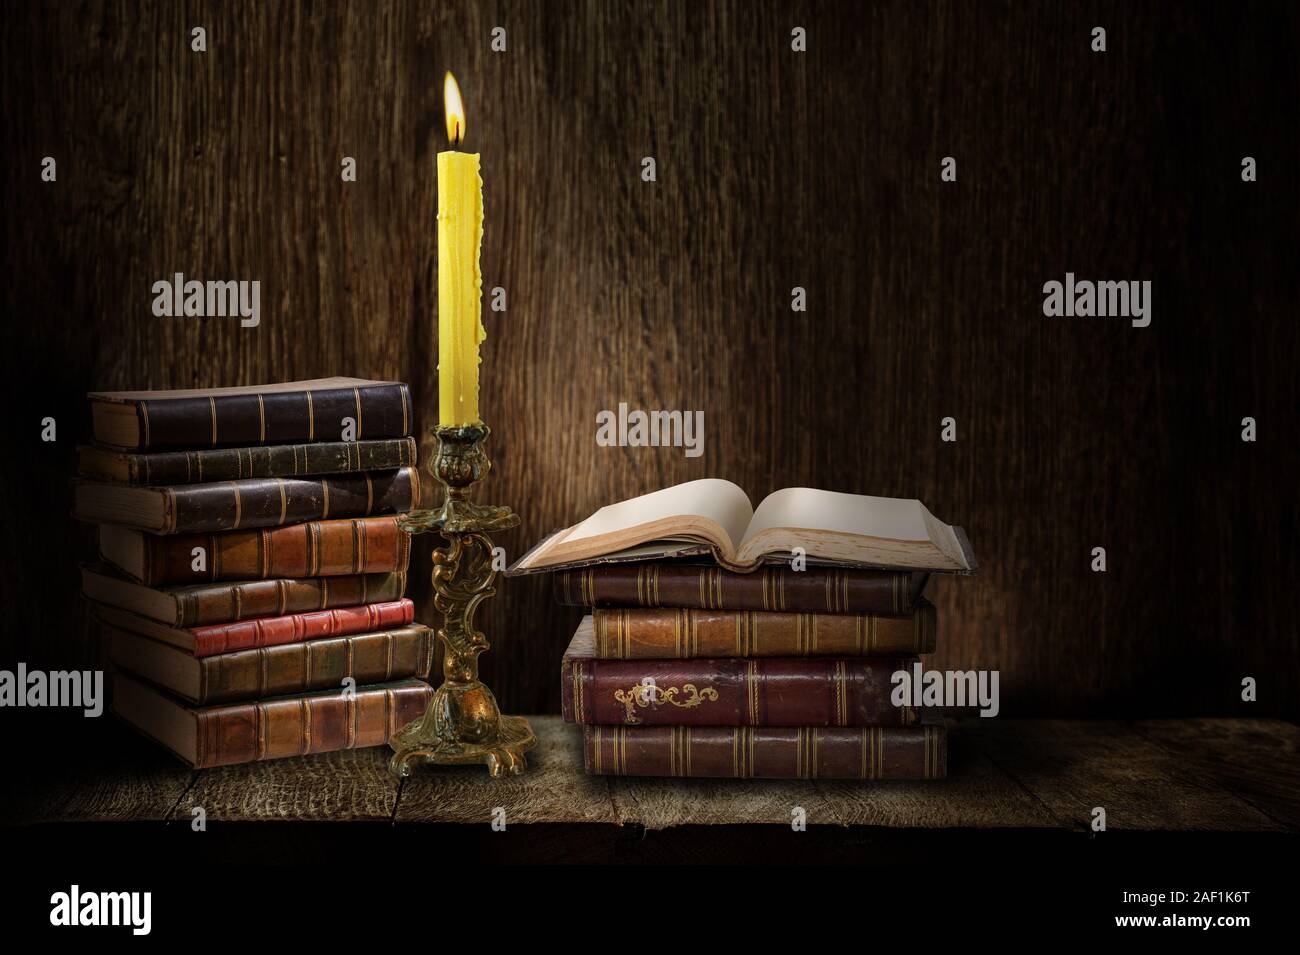 Candélabre rétro avec des bougies allumées et des livres sur fond sombre en bois Banque D'Images